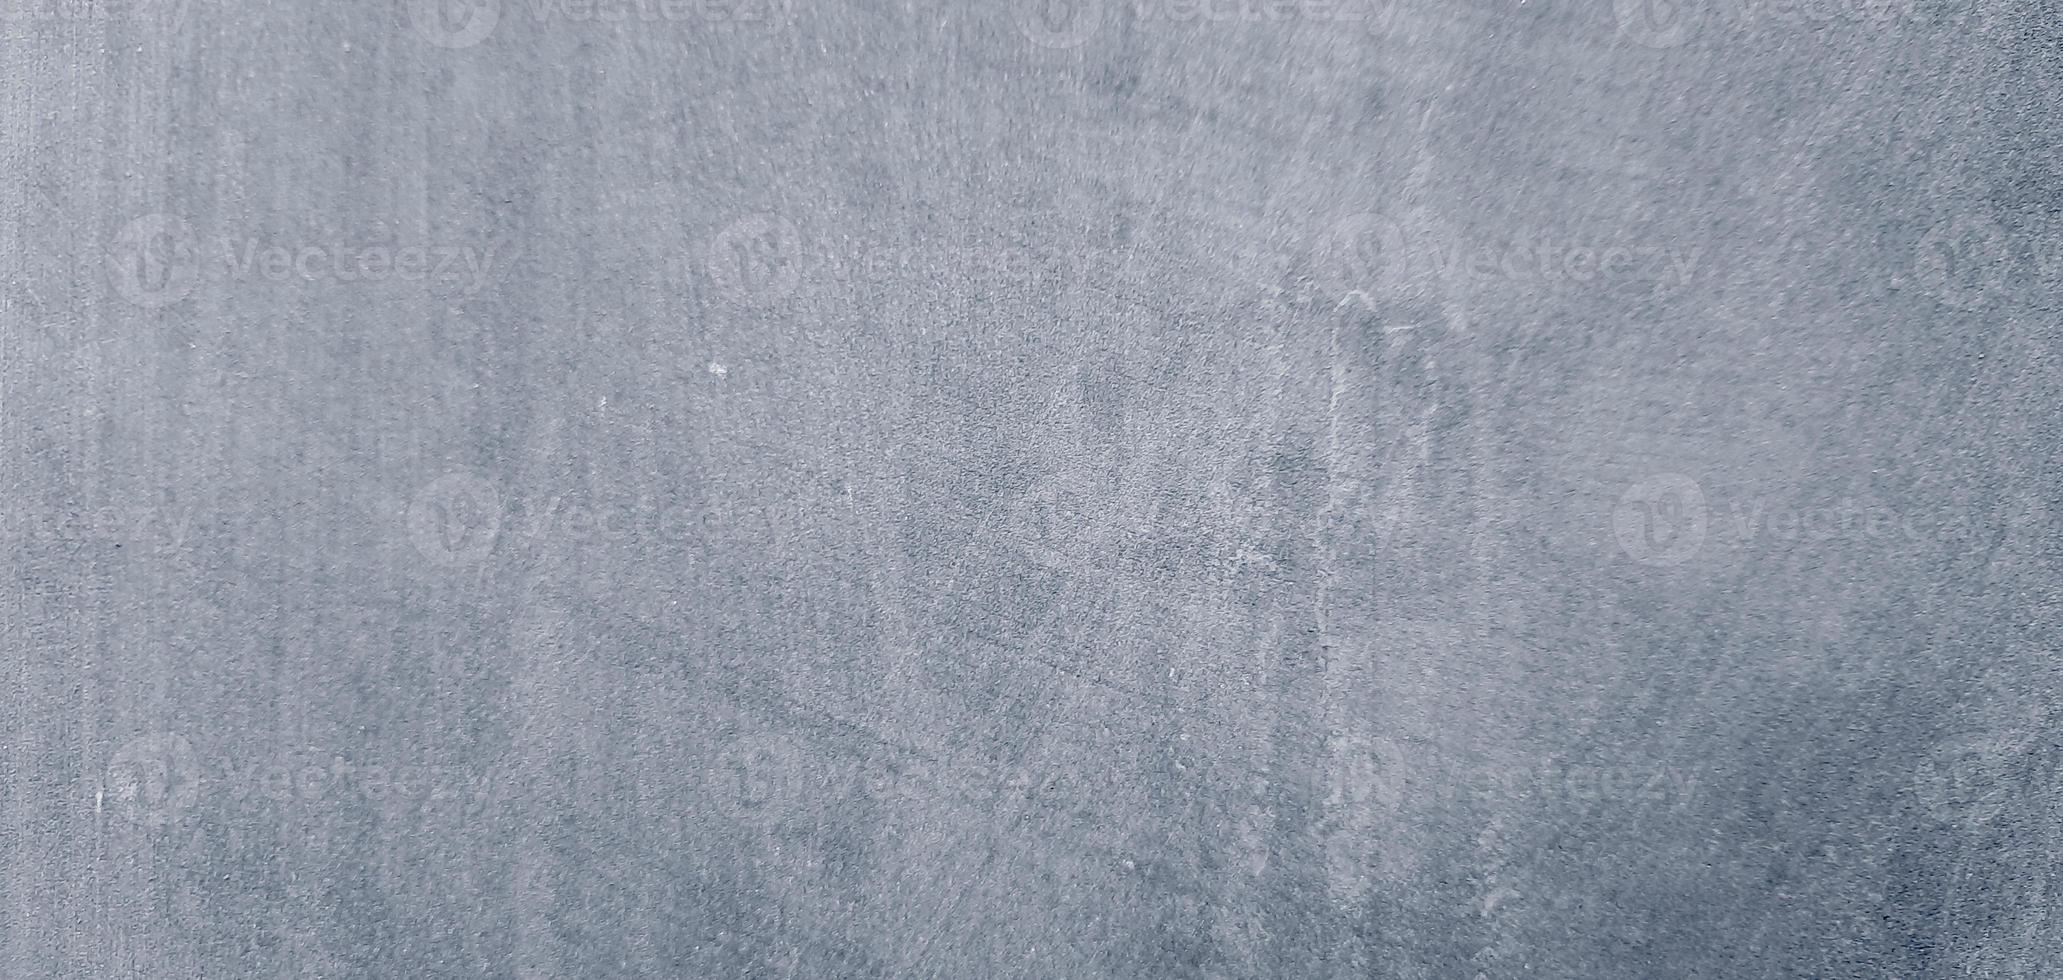 texture de béton de ciment gris. fond de rayures murales photo